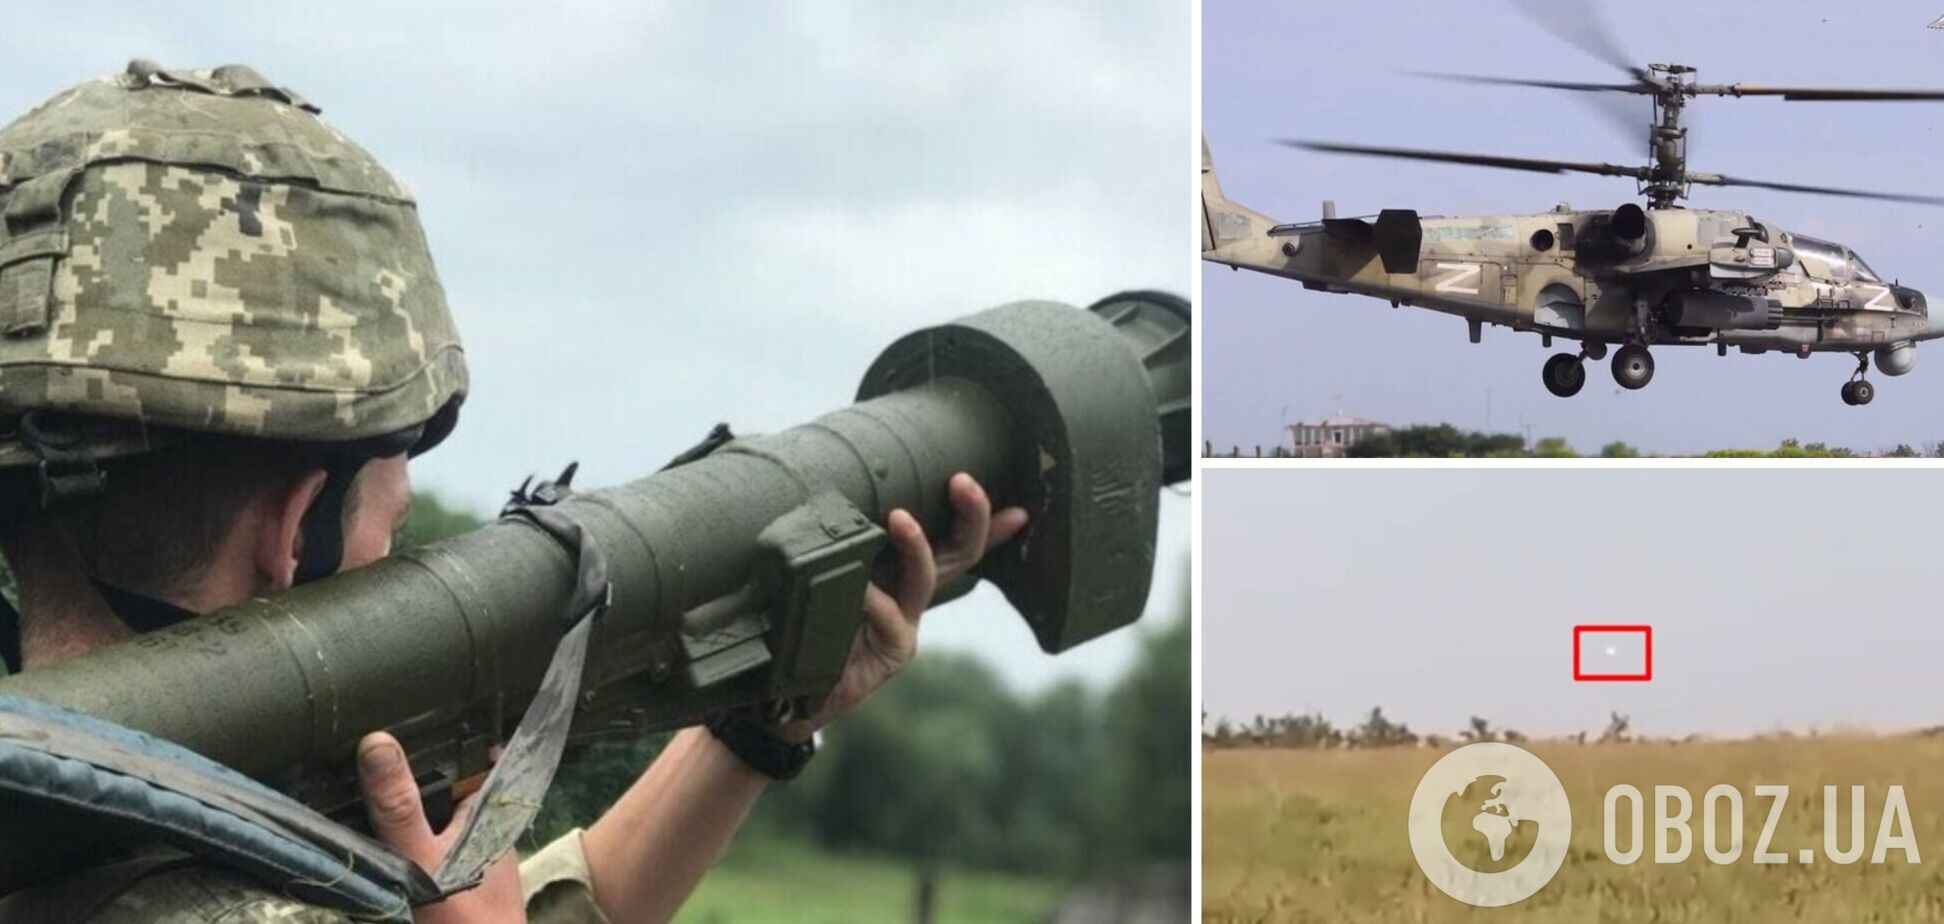 Точно в цель: уничтожение российского Ка-52 воинами ВСУ попало на видео